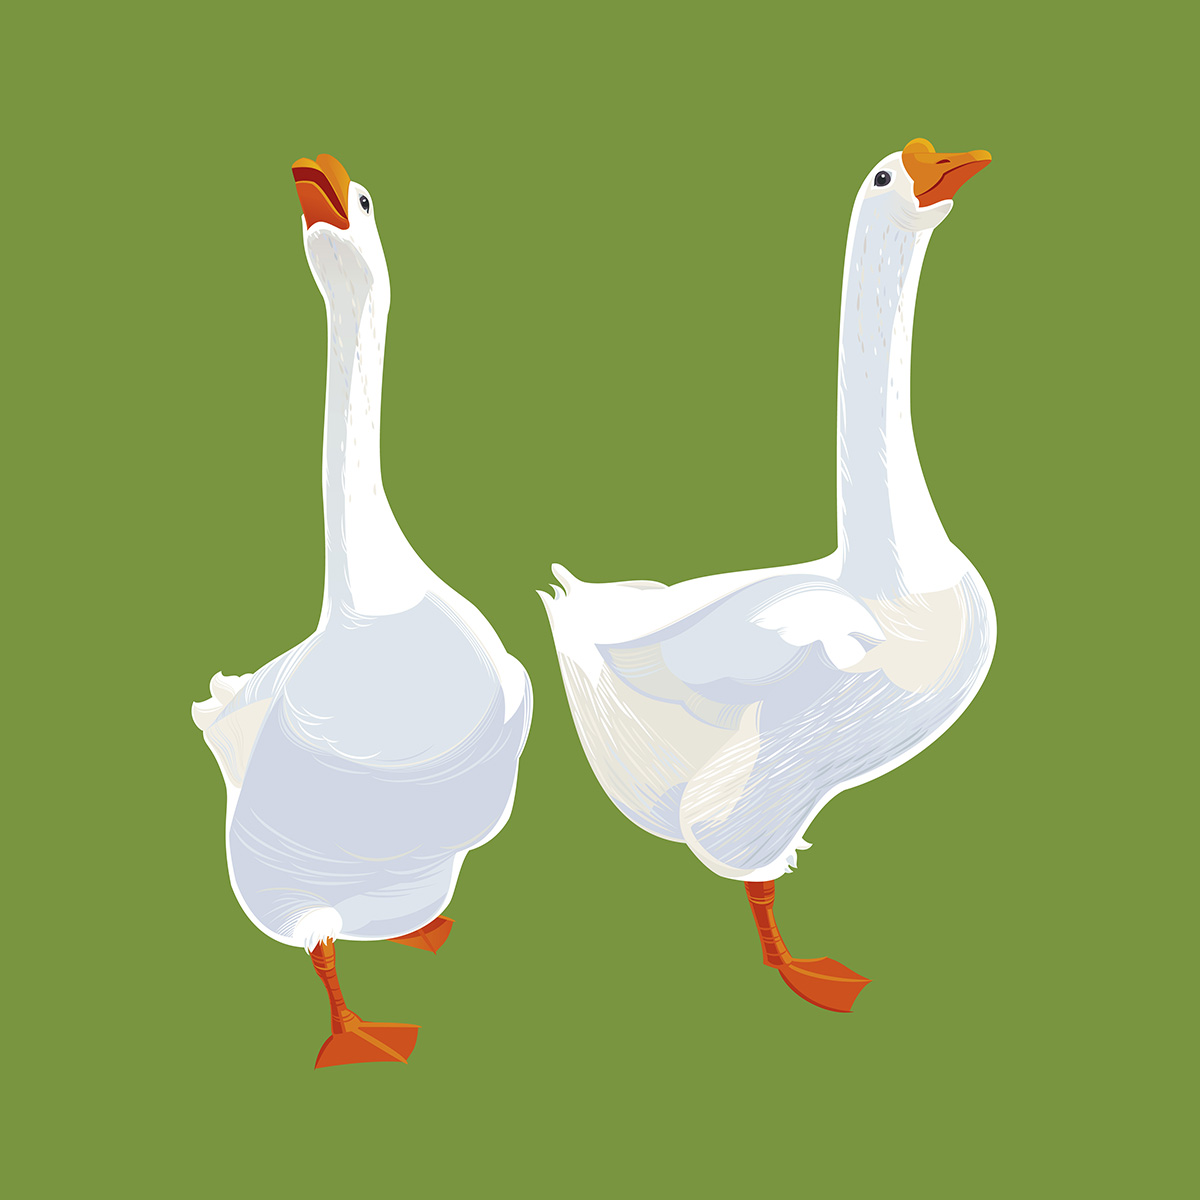 Rusanovska Vector Illustration Two Geese